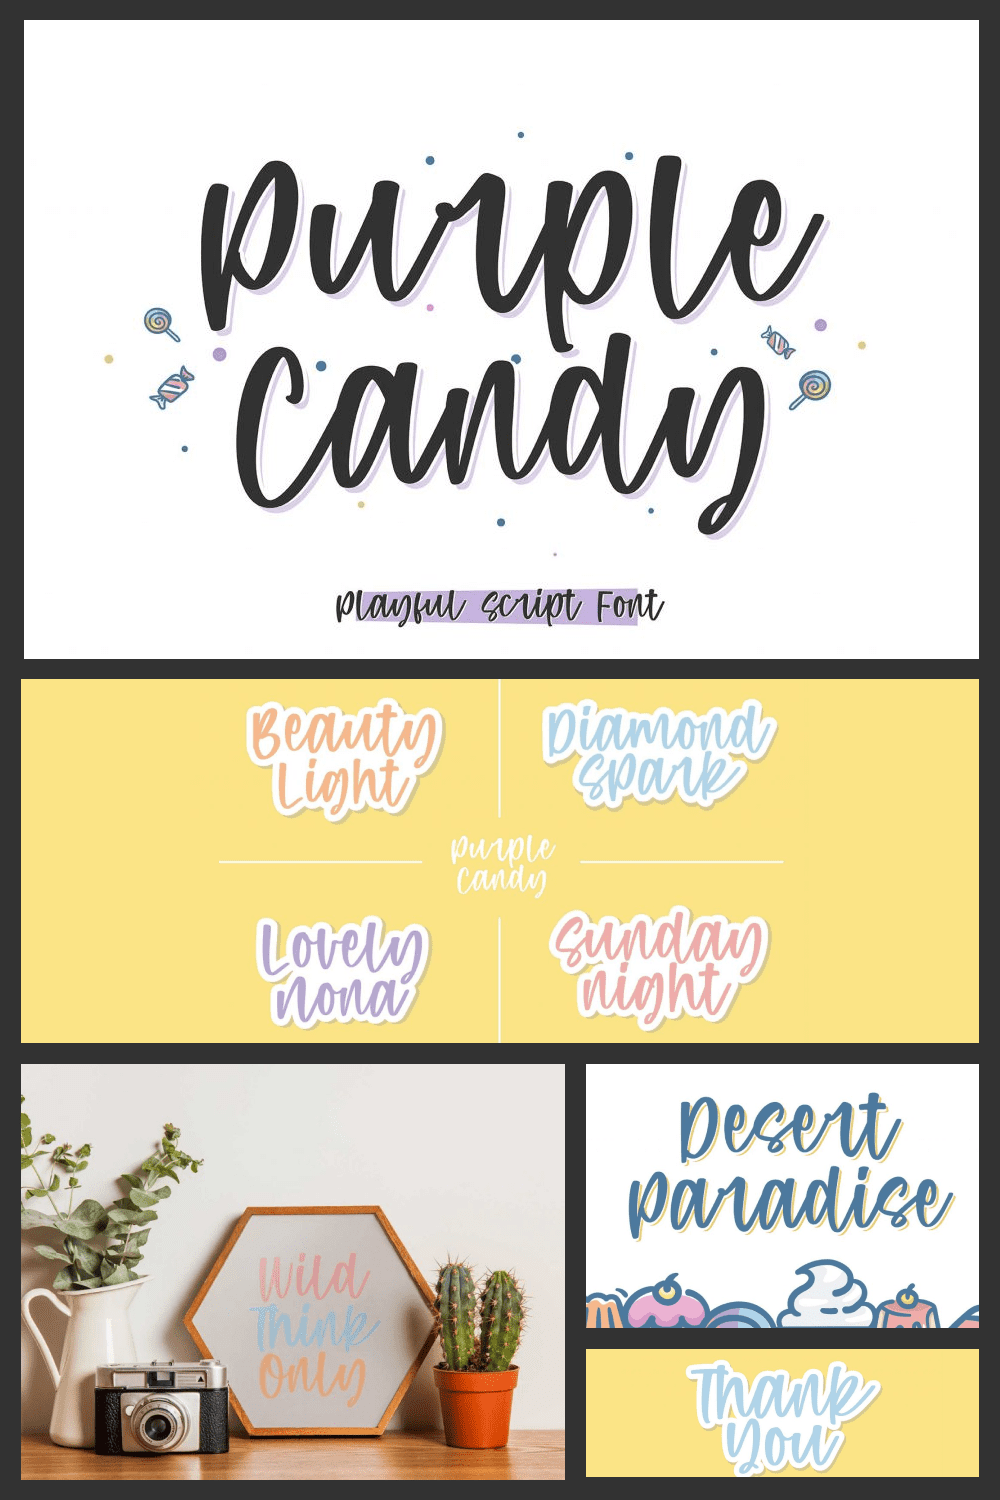 Purple Candy - Playful Script Font - MasterBundles - Pinterest Collage Image.